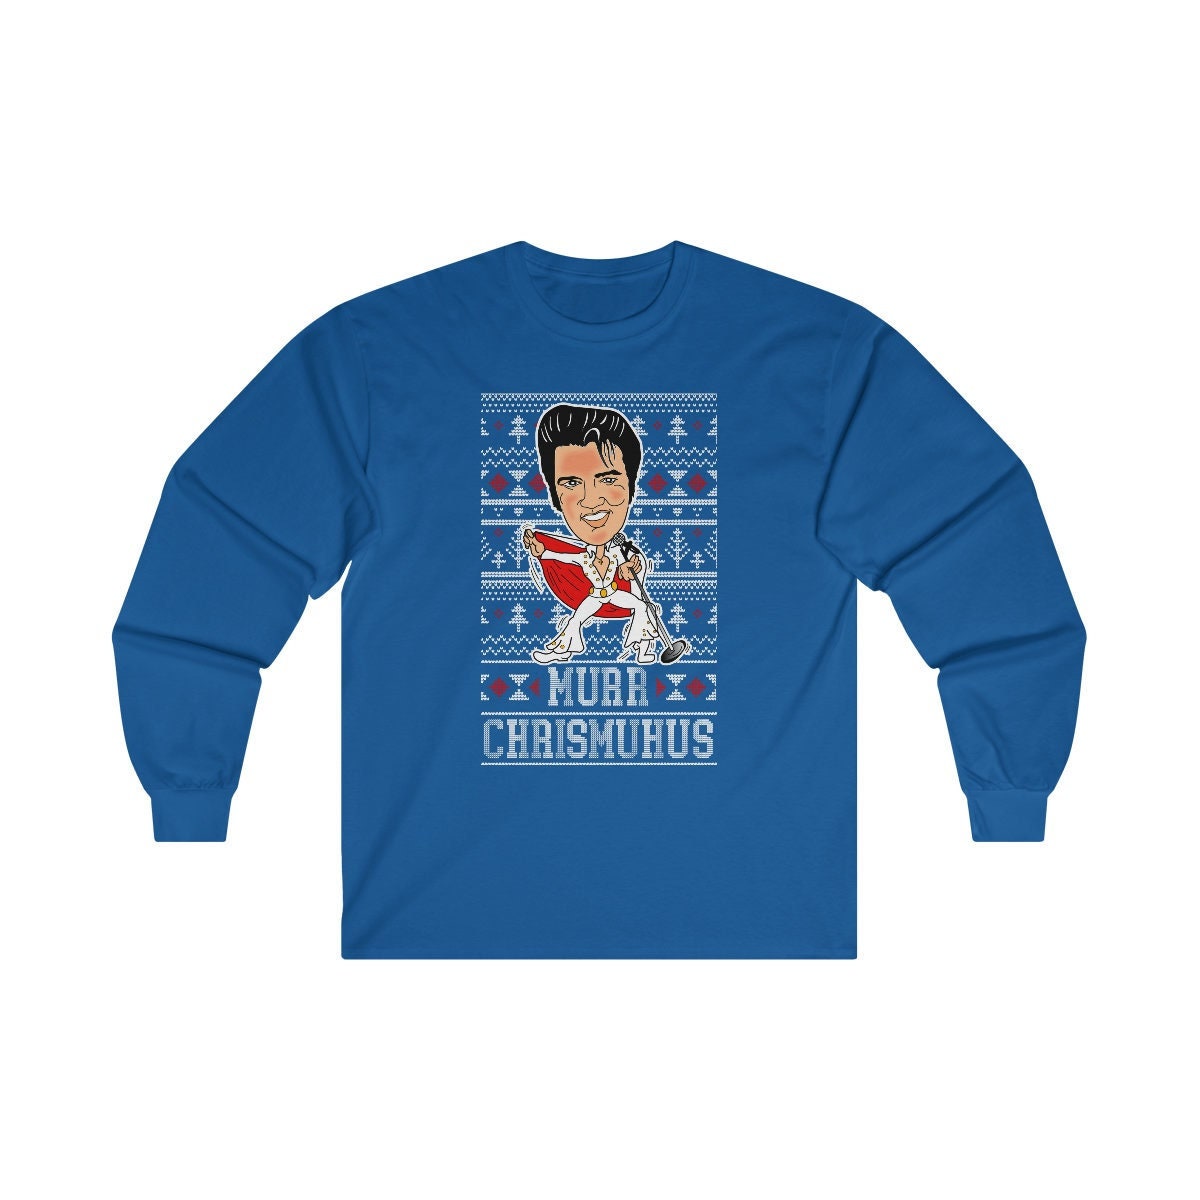 Discover Elvis Christmas Sweatshirt, Ugly Christmas Sweater, Elvis Christmas Sweatshirt